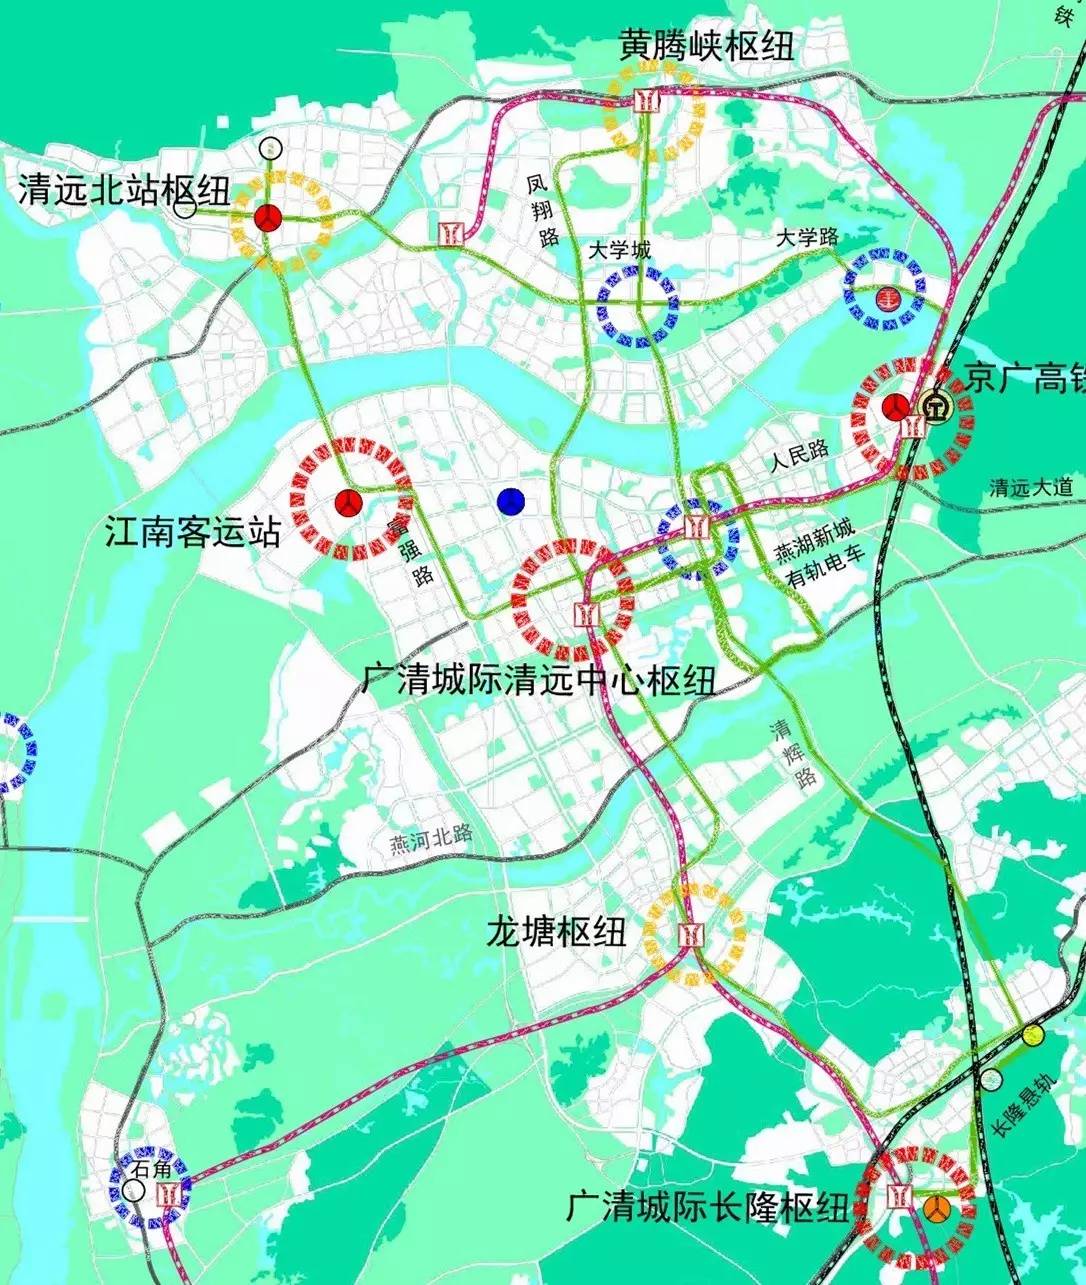 清远市城乡规划局:珠三角城际轨道交通广清城际北延线